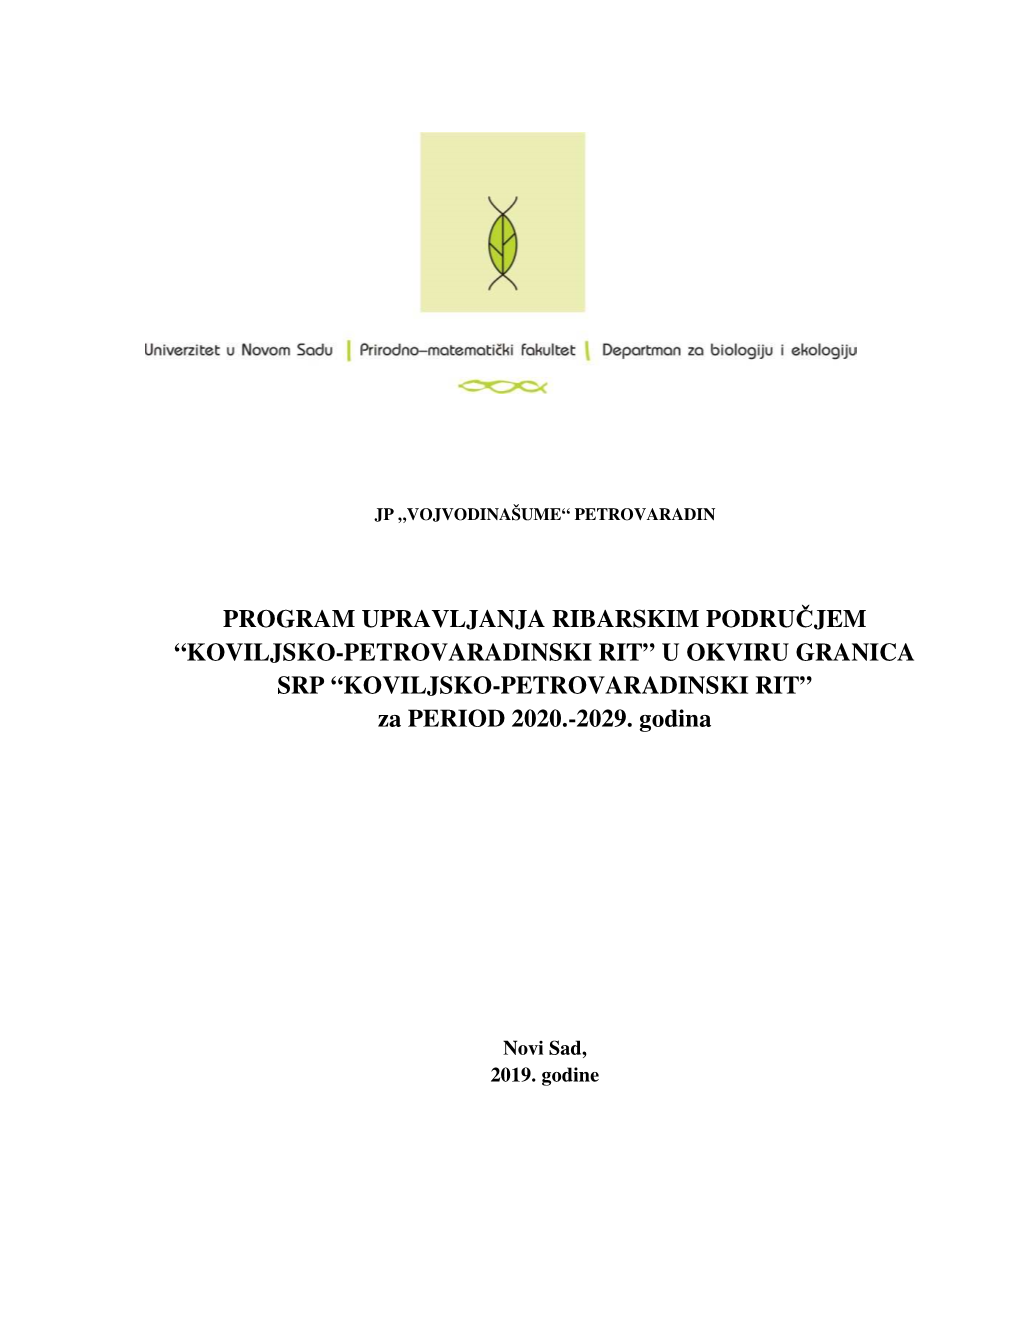 KOVILJSKO-PETROVARADINSKI RIT” U OKVIRU GRANICA SRP “KOVILJSKO-PETROVARADINSKI RIT” Za PERIOD 2020.-2029